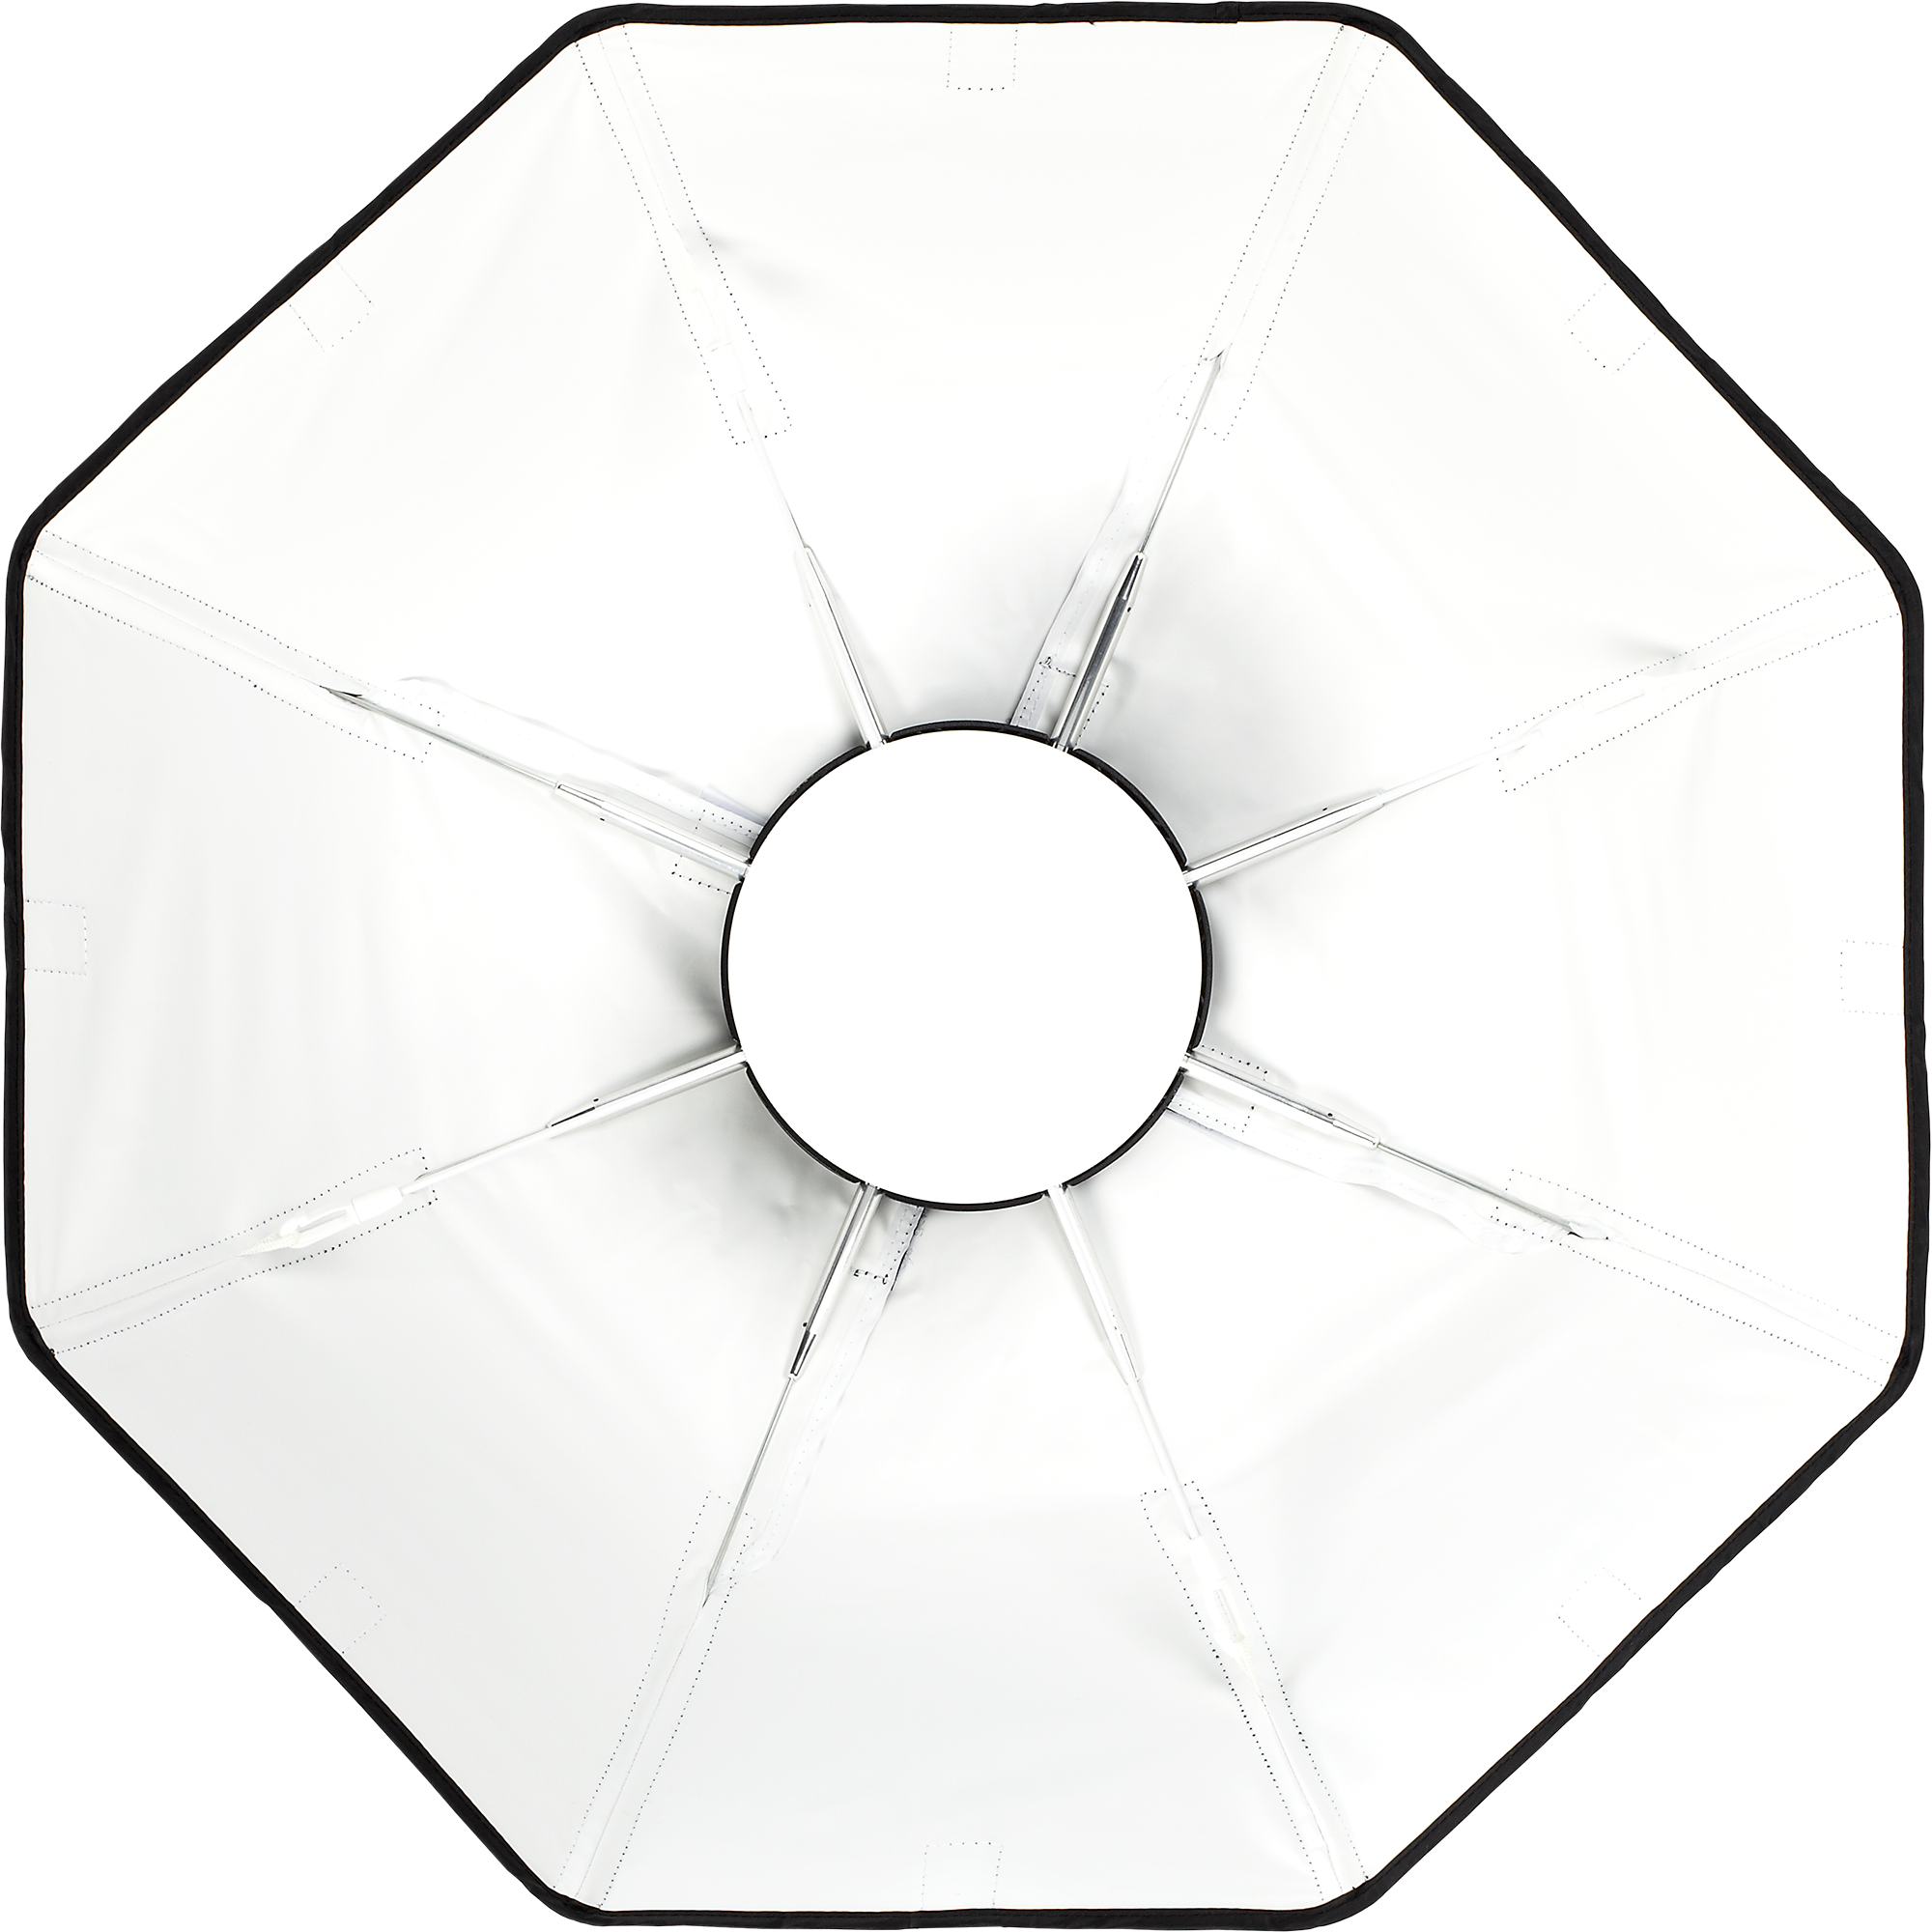 Ø 56 cm Beauty Dish 22" argento con Soft diffusore e adattatore per Profoto 